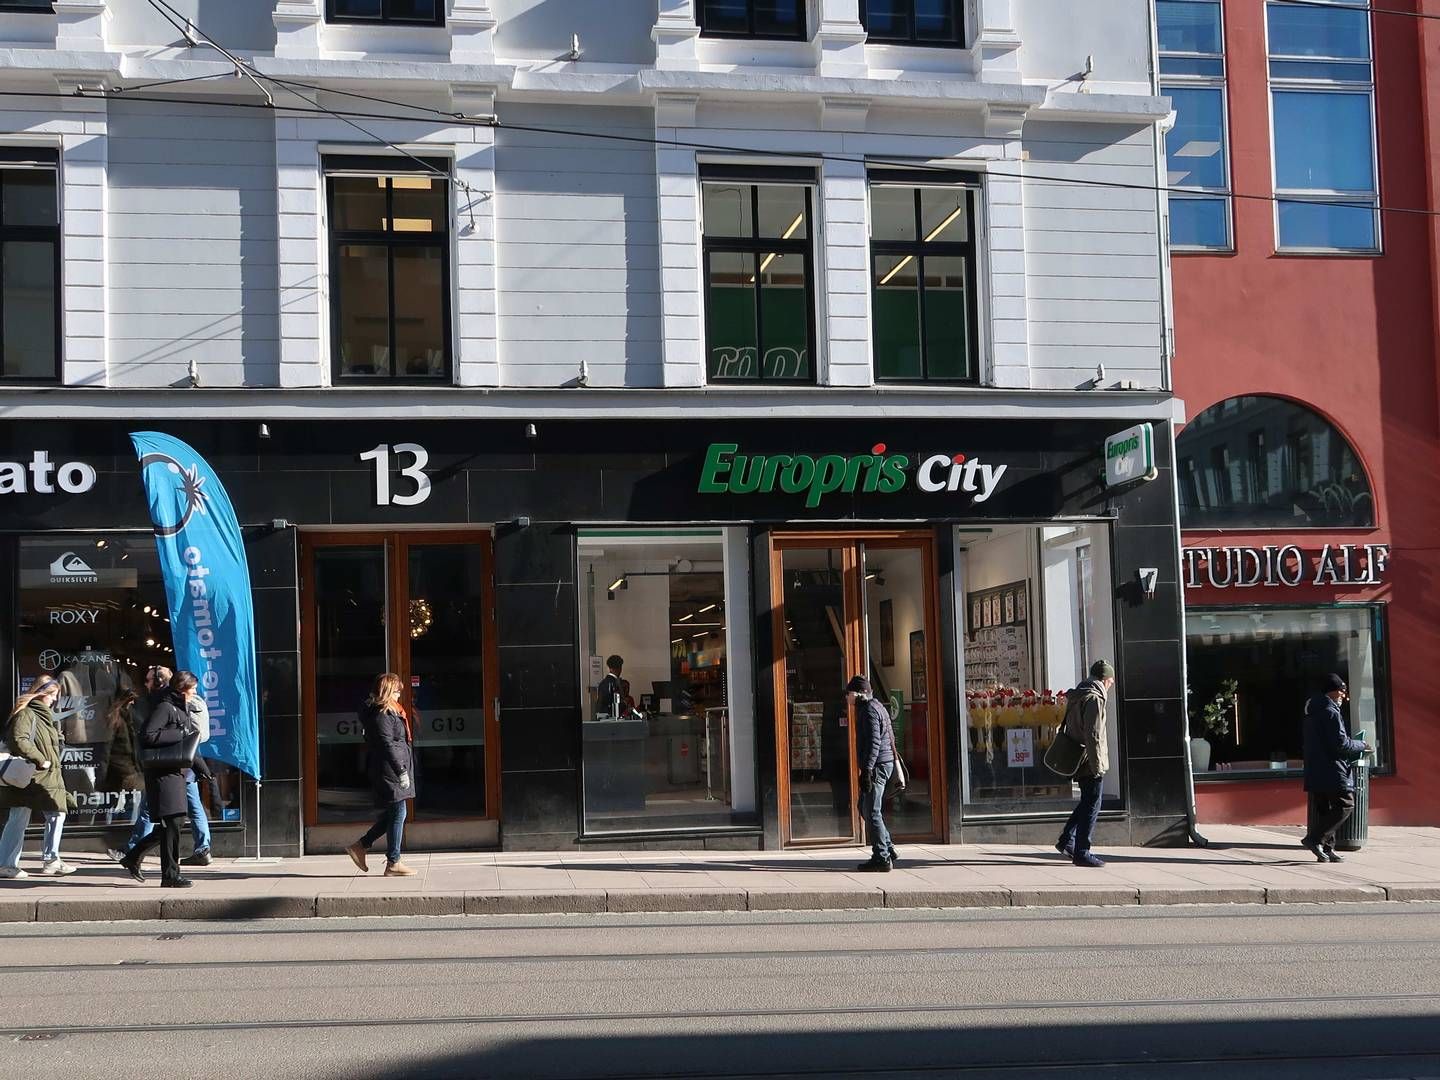 ÅPNET I DAG: Europris City-butikken i City er kjedens butikk nummer 278. | Photo: Øystein Byberg